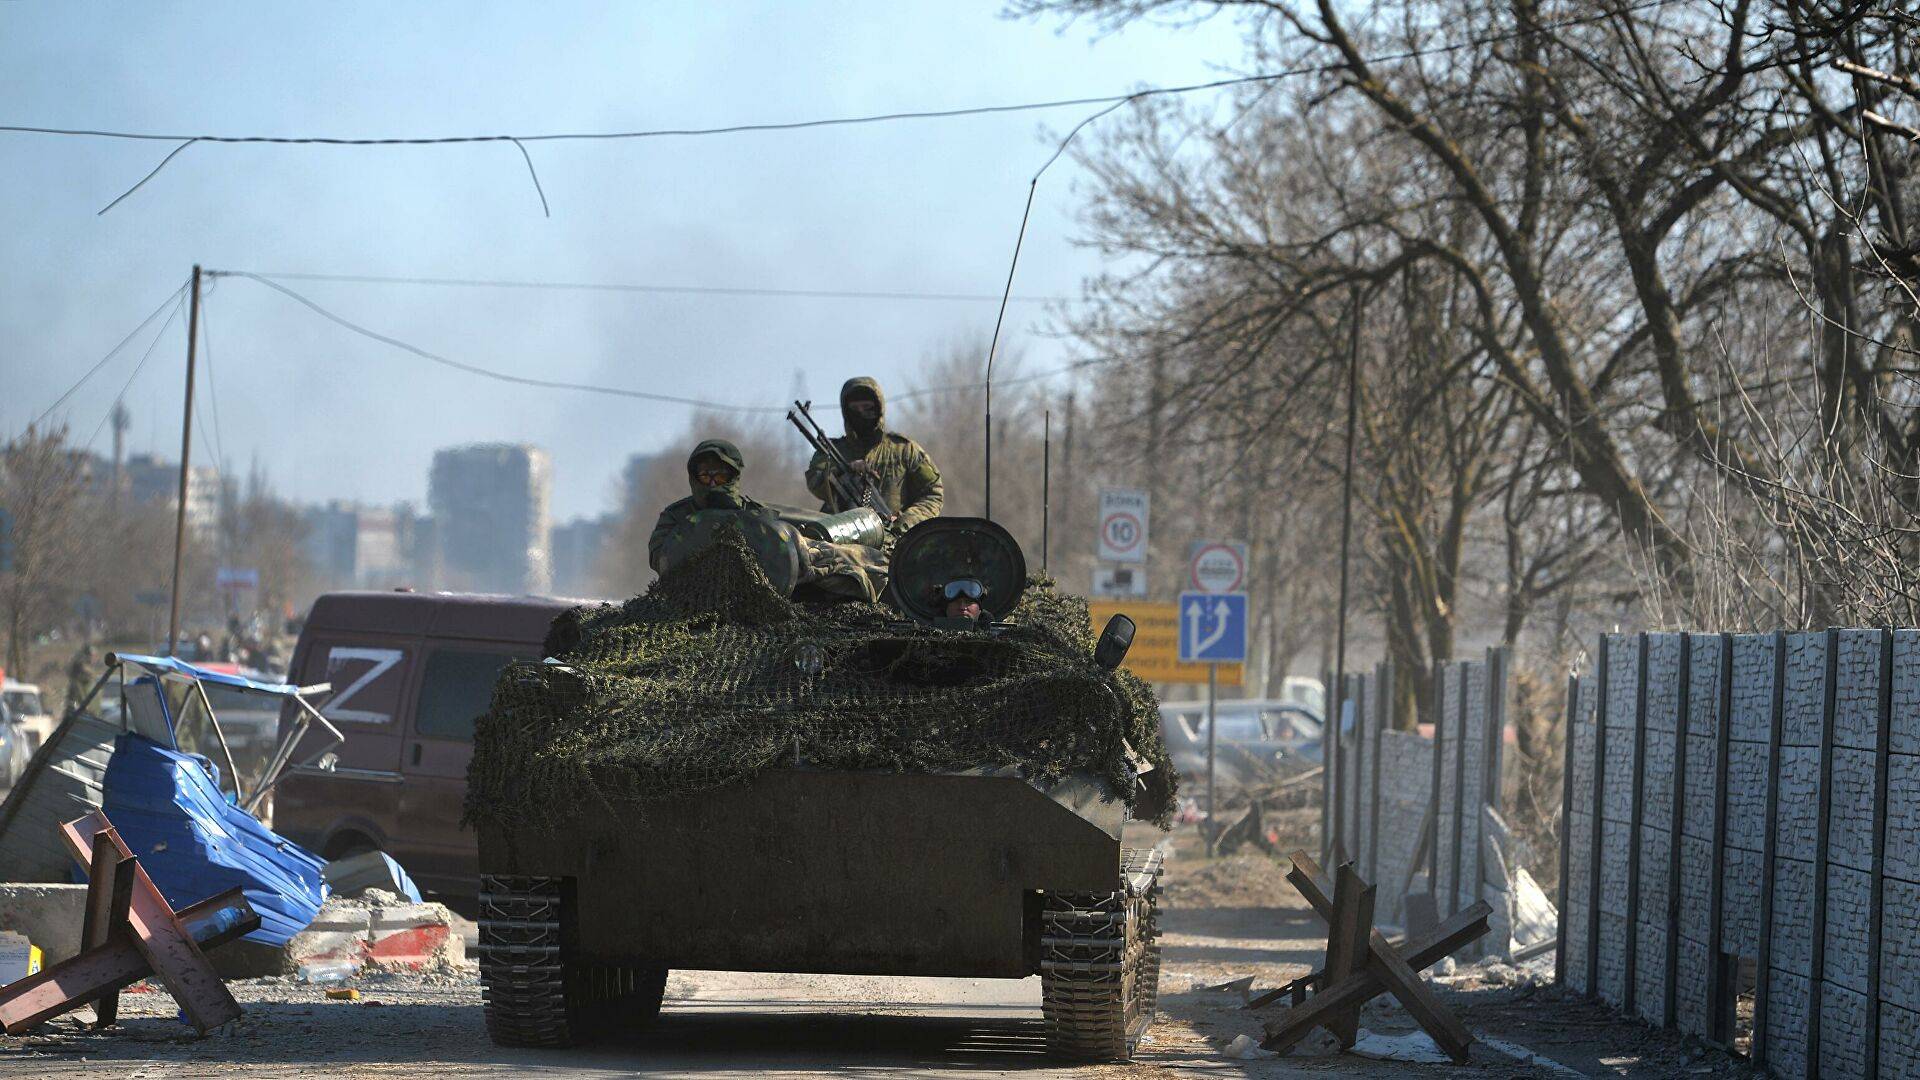 军队撤出重镇阿夫杰耶夫卡,乌军或处于崩溃边缘